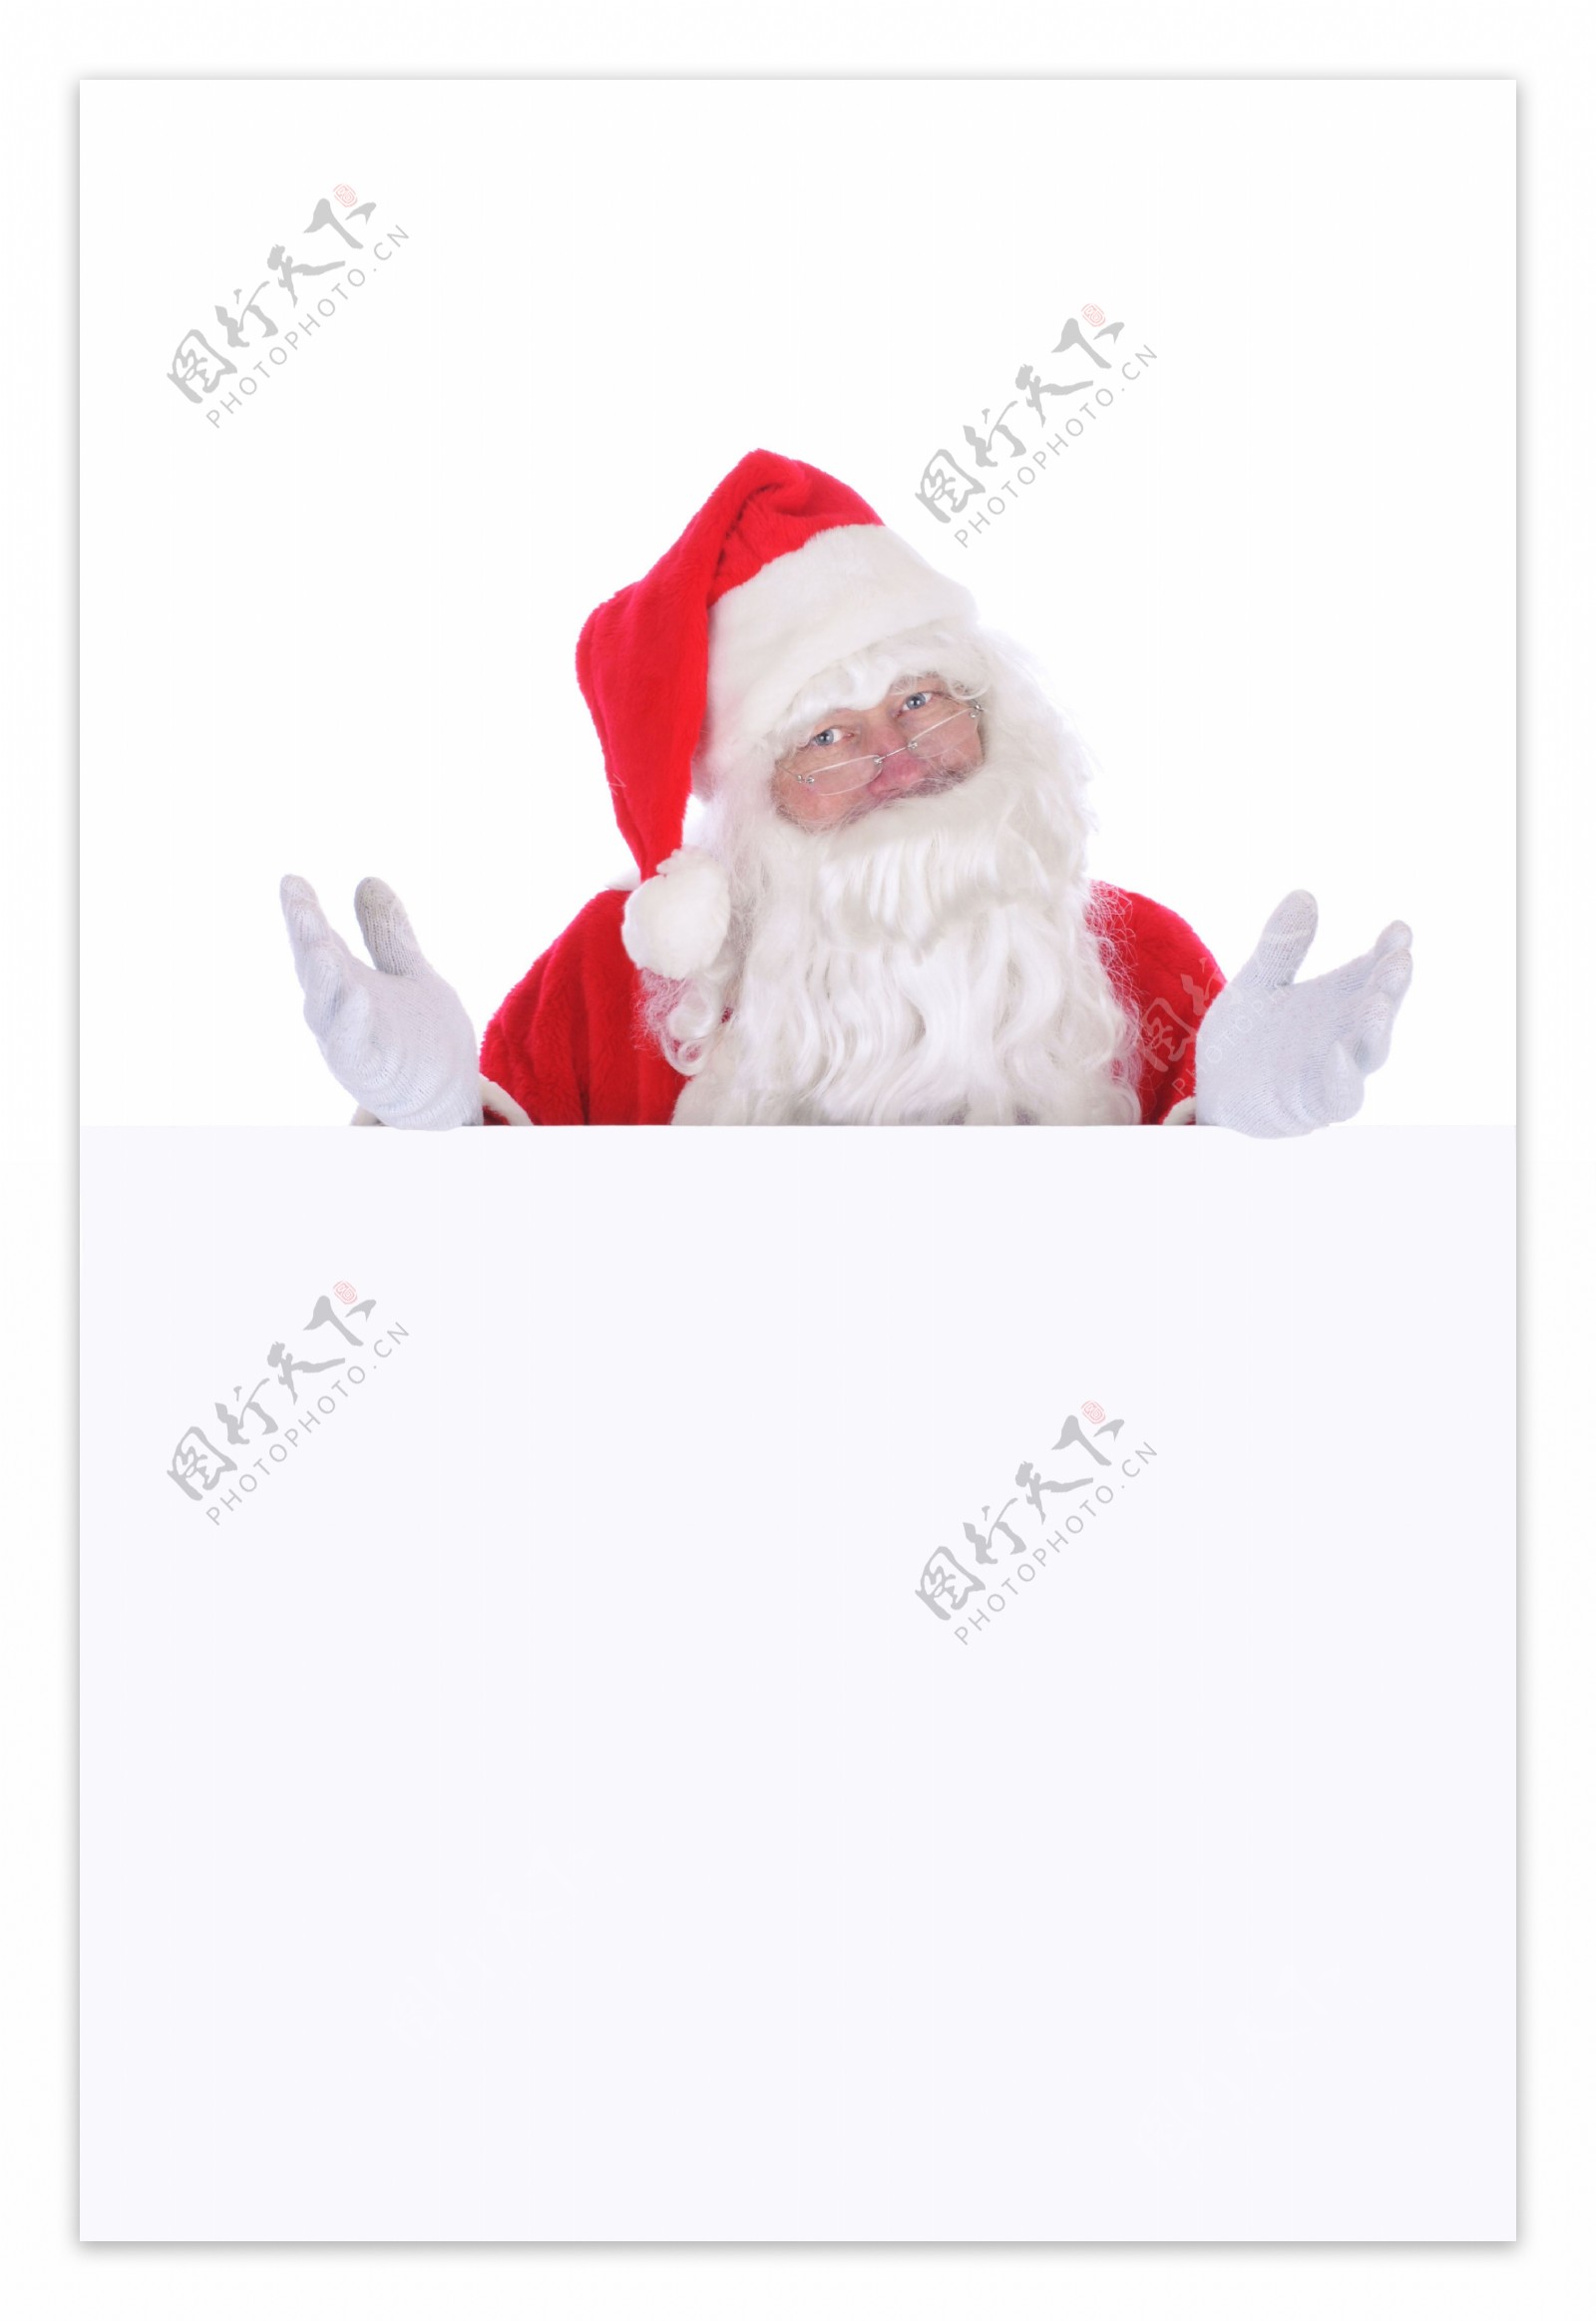 空白广告牌圣诞老人图片